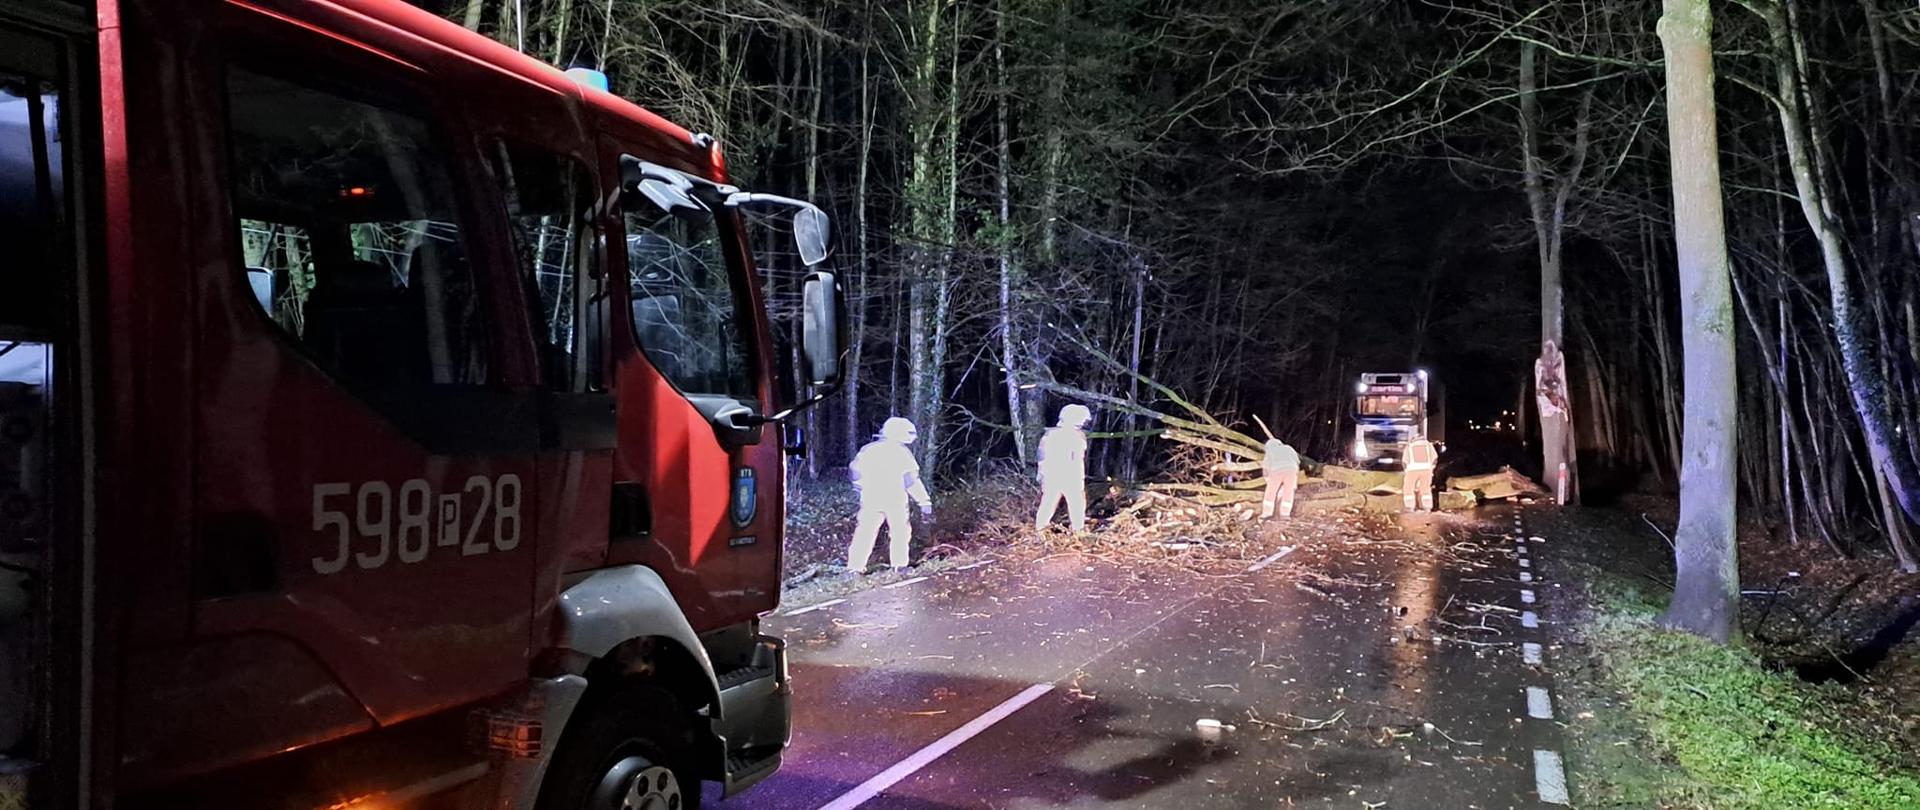 Widać drzewo leżące na drodze, strażacy pracują, jest noc, po lewej samochód strażacki